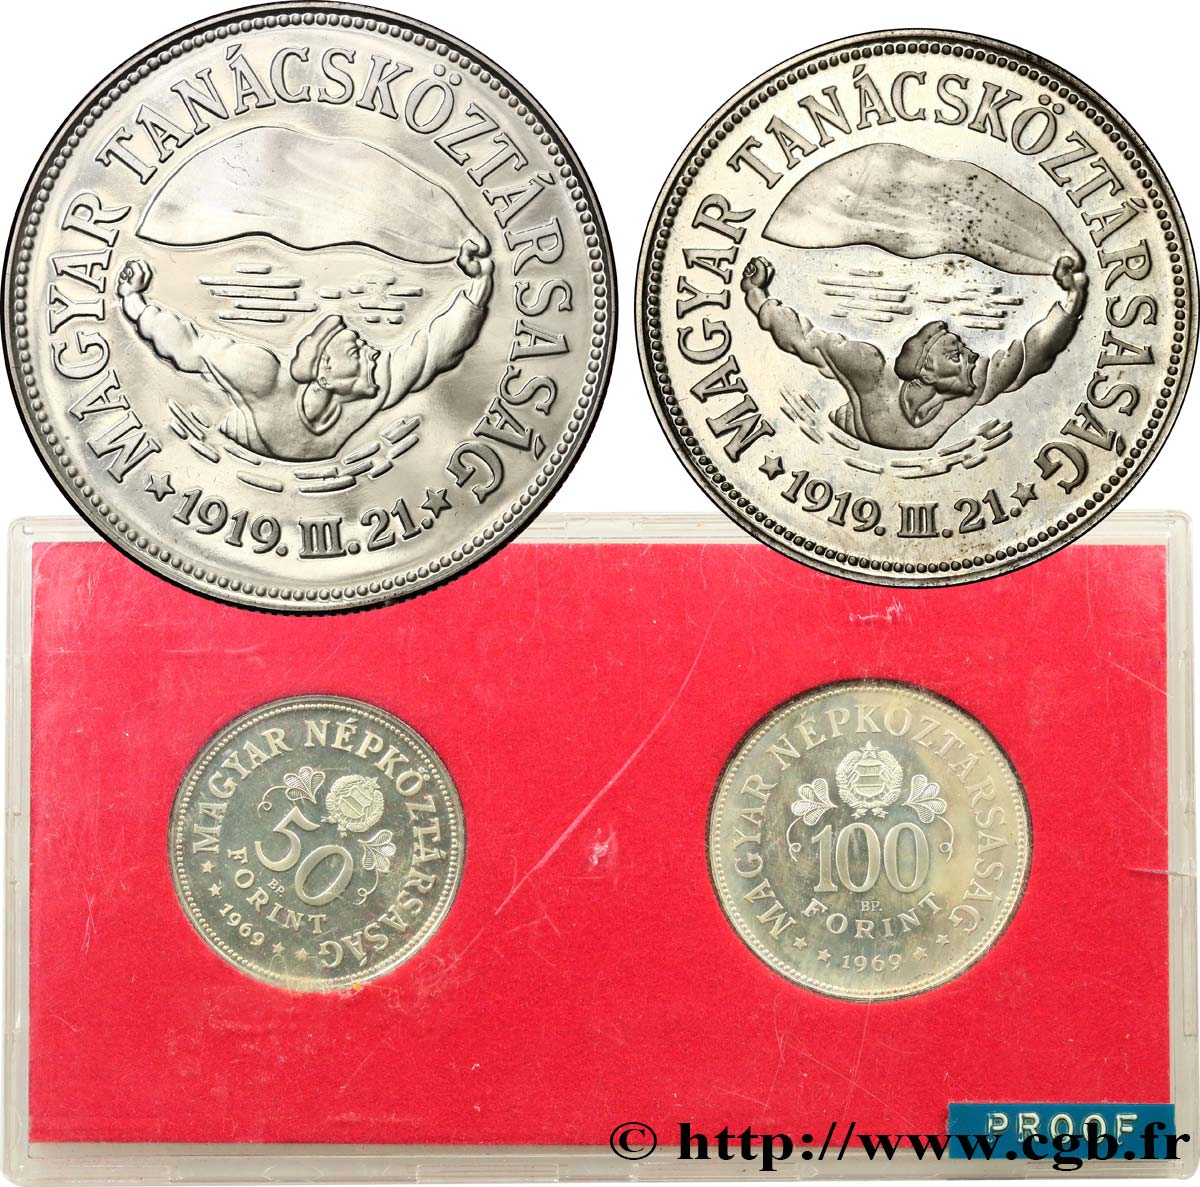 UNGHERIA Série Proof - 2 monnaies - 50e anniversaire des soviets du 31 mars 1919 1969 Budapest BE 